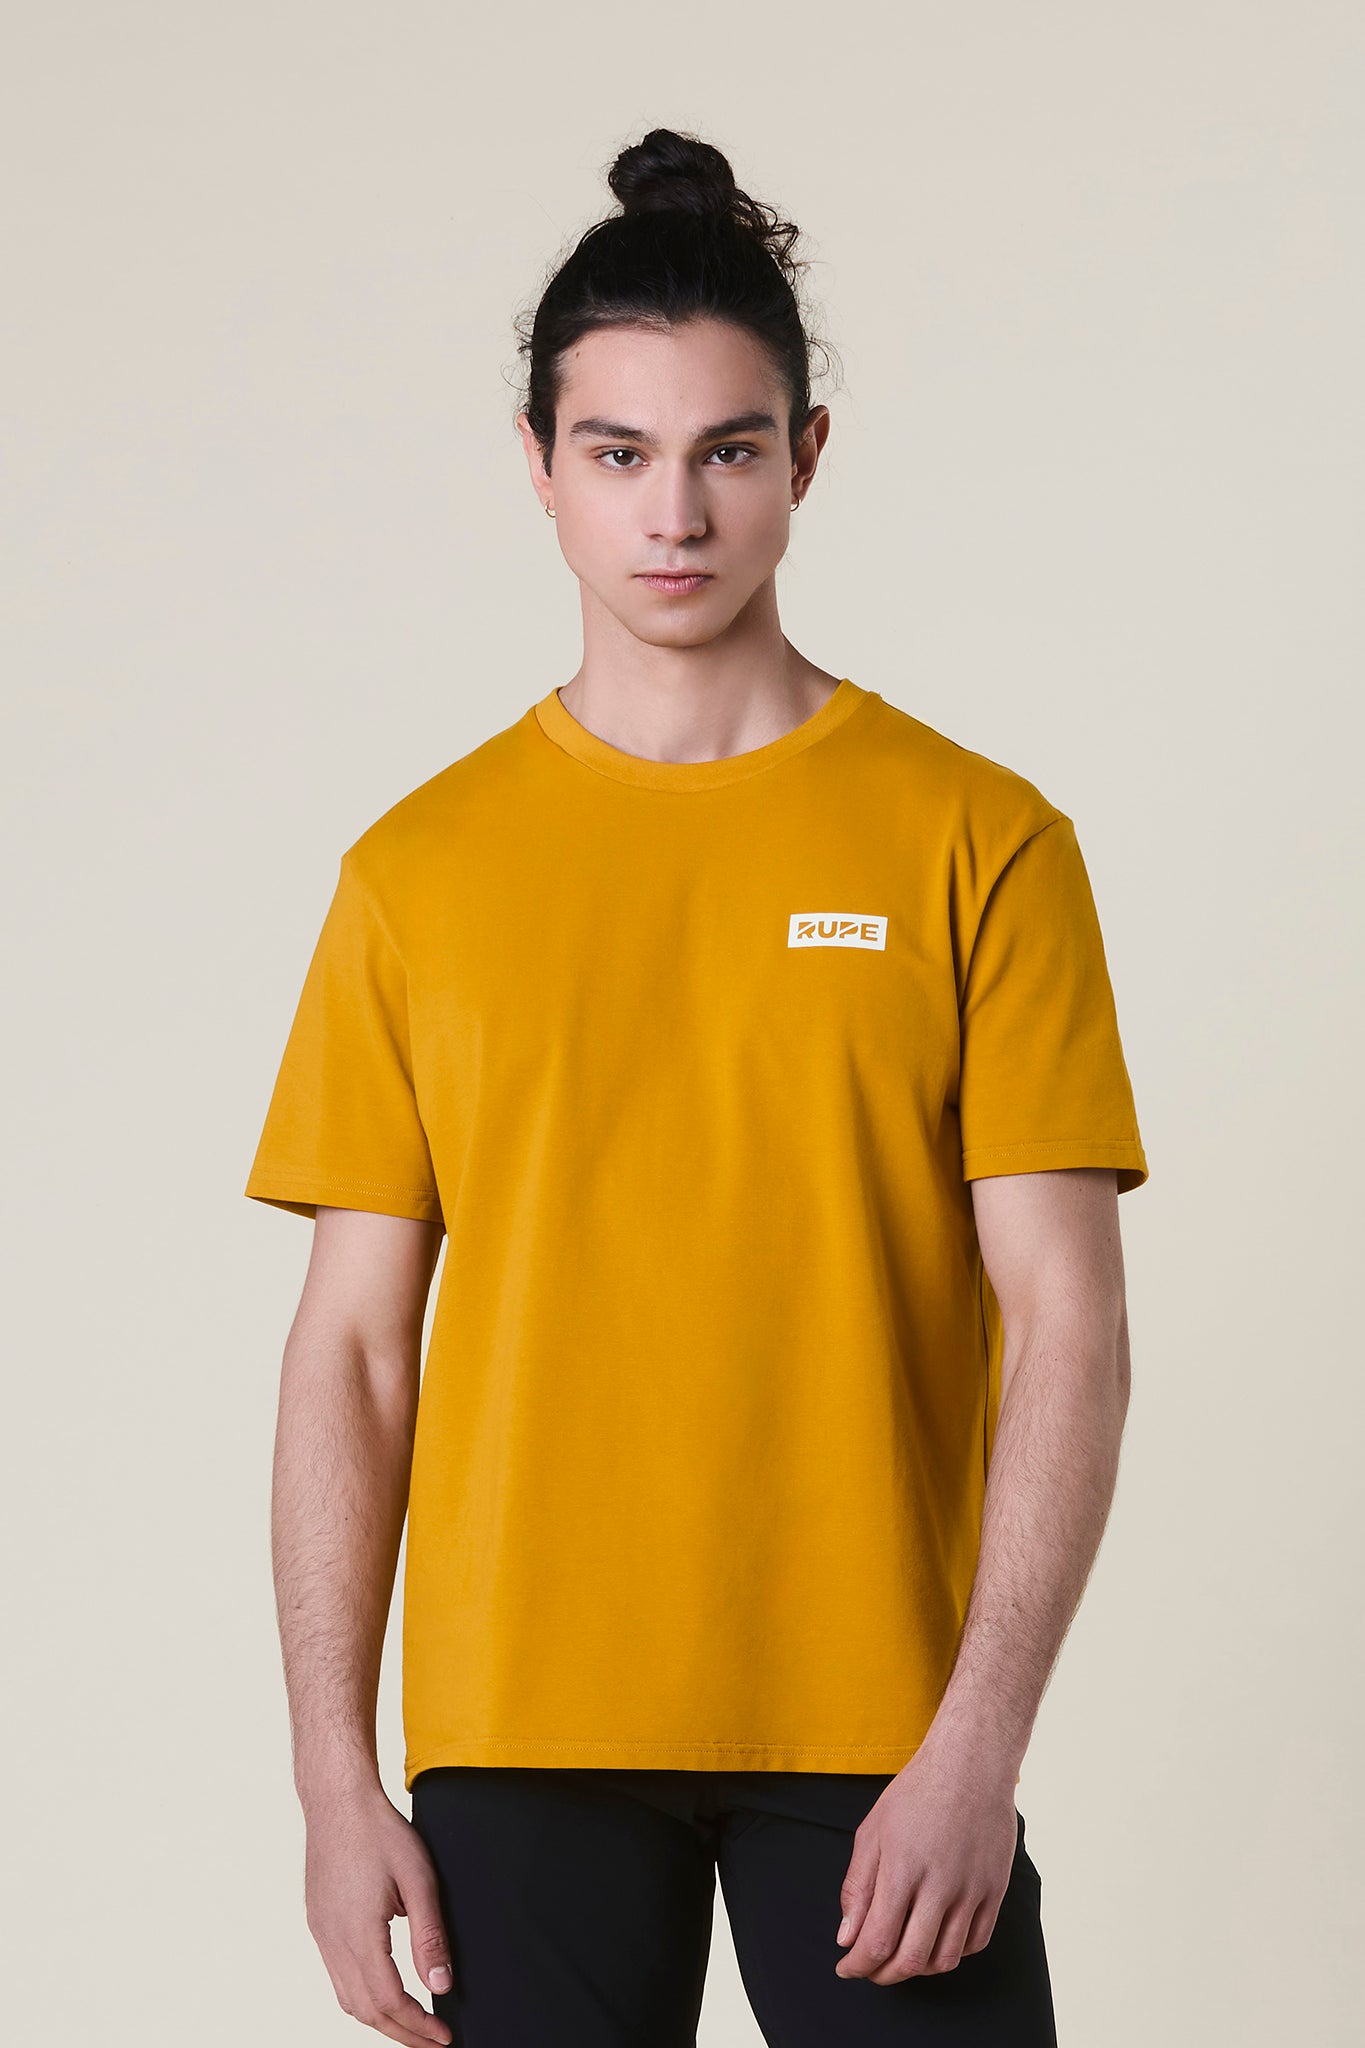 T-Shirt en coton Homme - Moutarde | Rupe